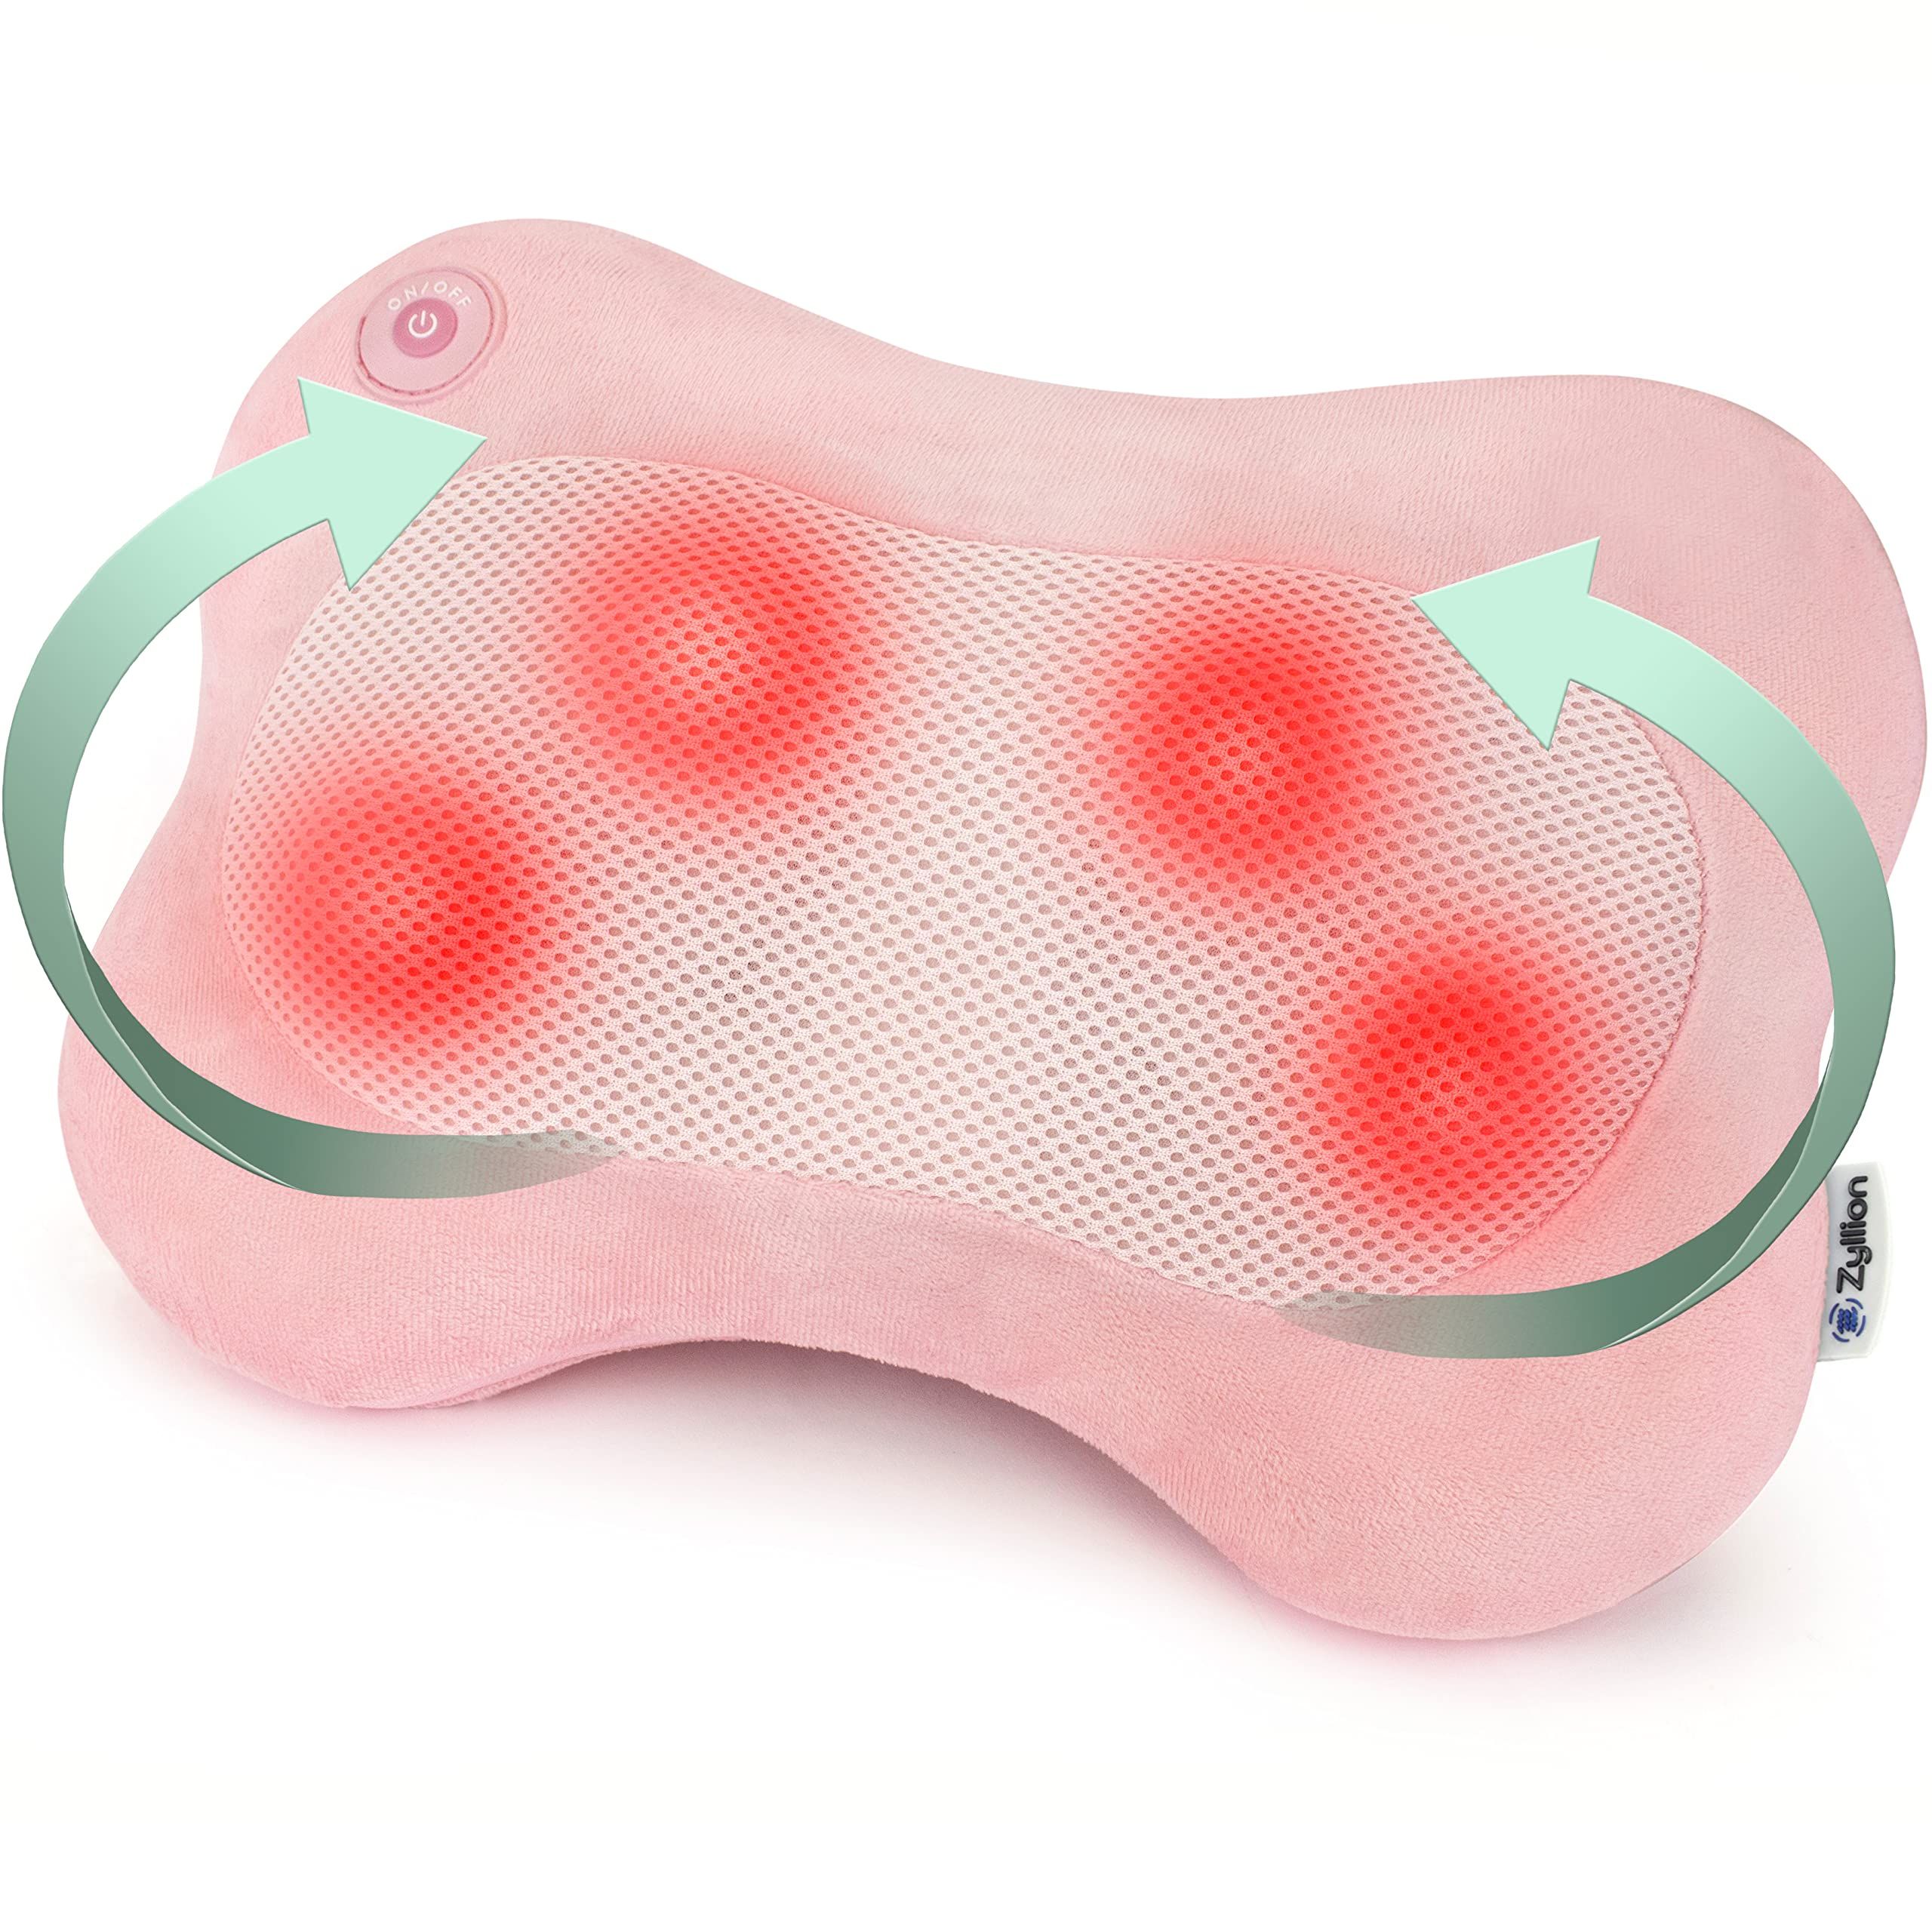 Zyllion Shiatsu Back and Neck Massager - Premium Spa-Like 3D Kneading Deep Tissue Massage Pillow ... | Amazon (US)